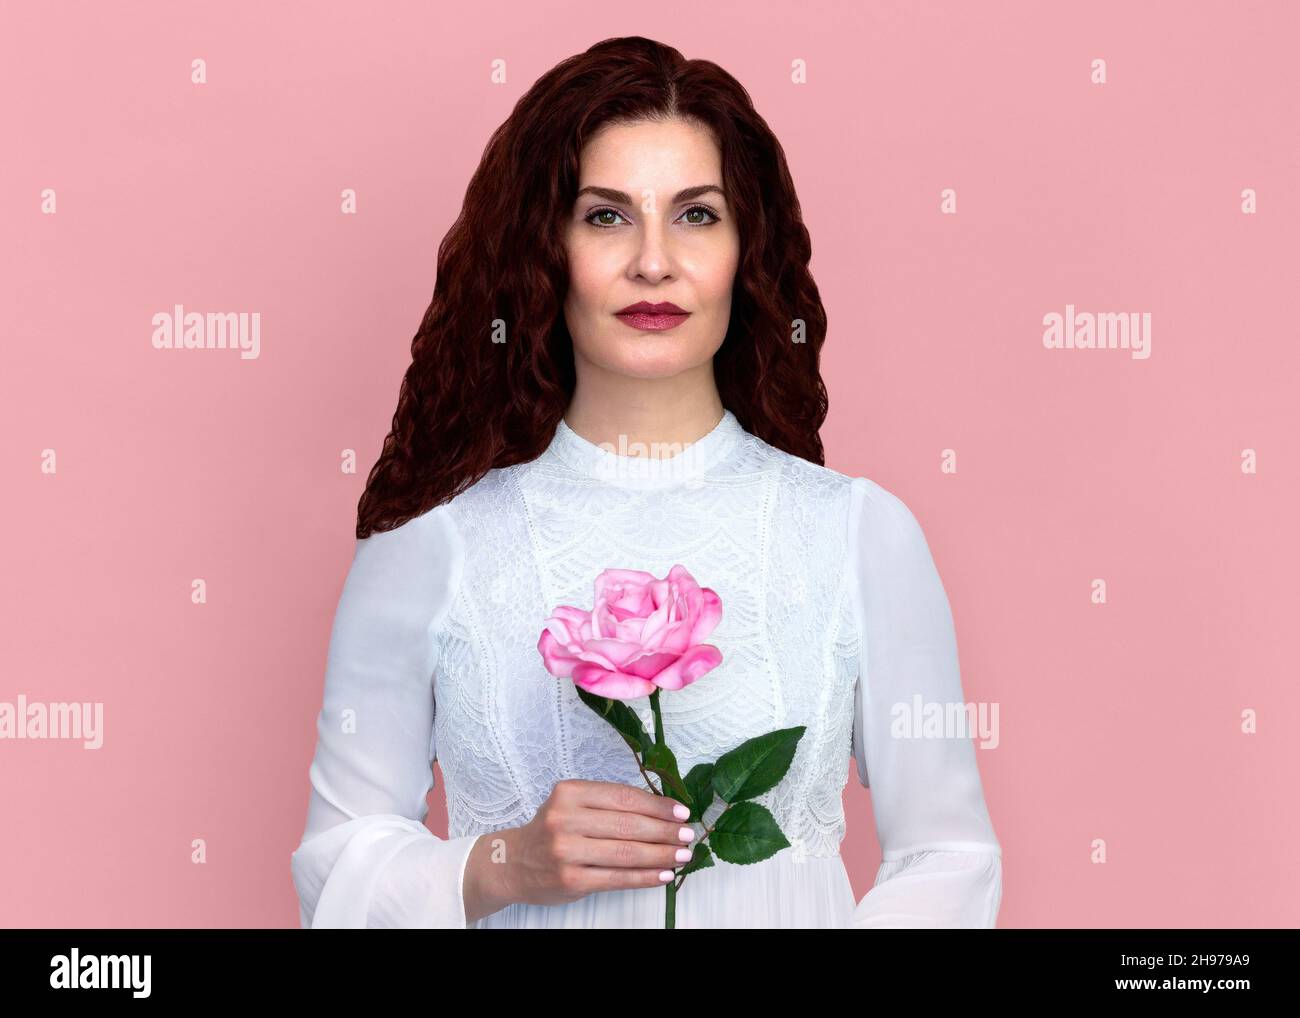 Frau mit einer Rose gegen rosa Hintergrund. Nahaufnahme Porträt der schönen Frau mit welligen rotbraunen Haaren hält einzelne rosa Rose zart. Stockfoto